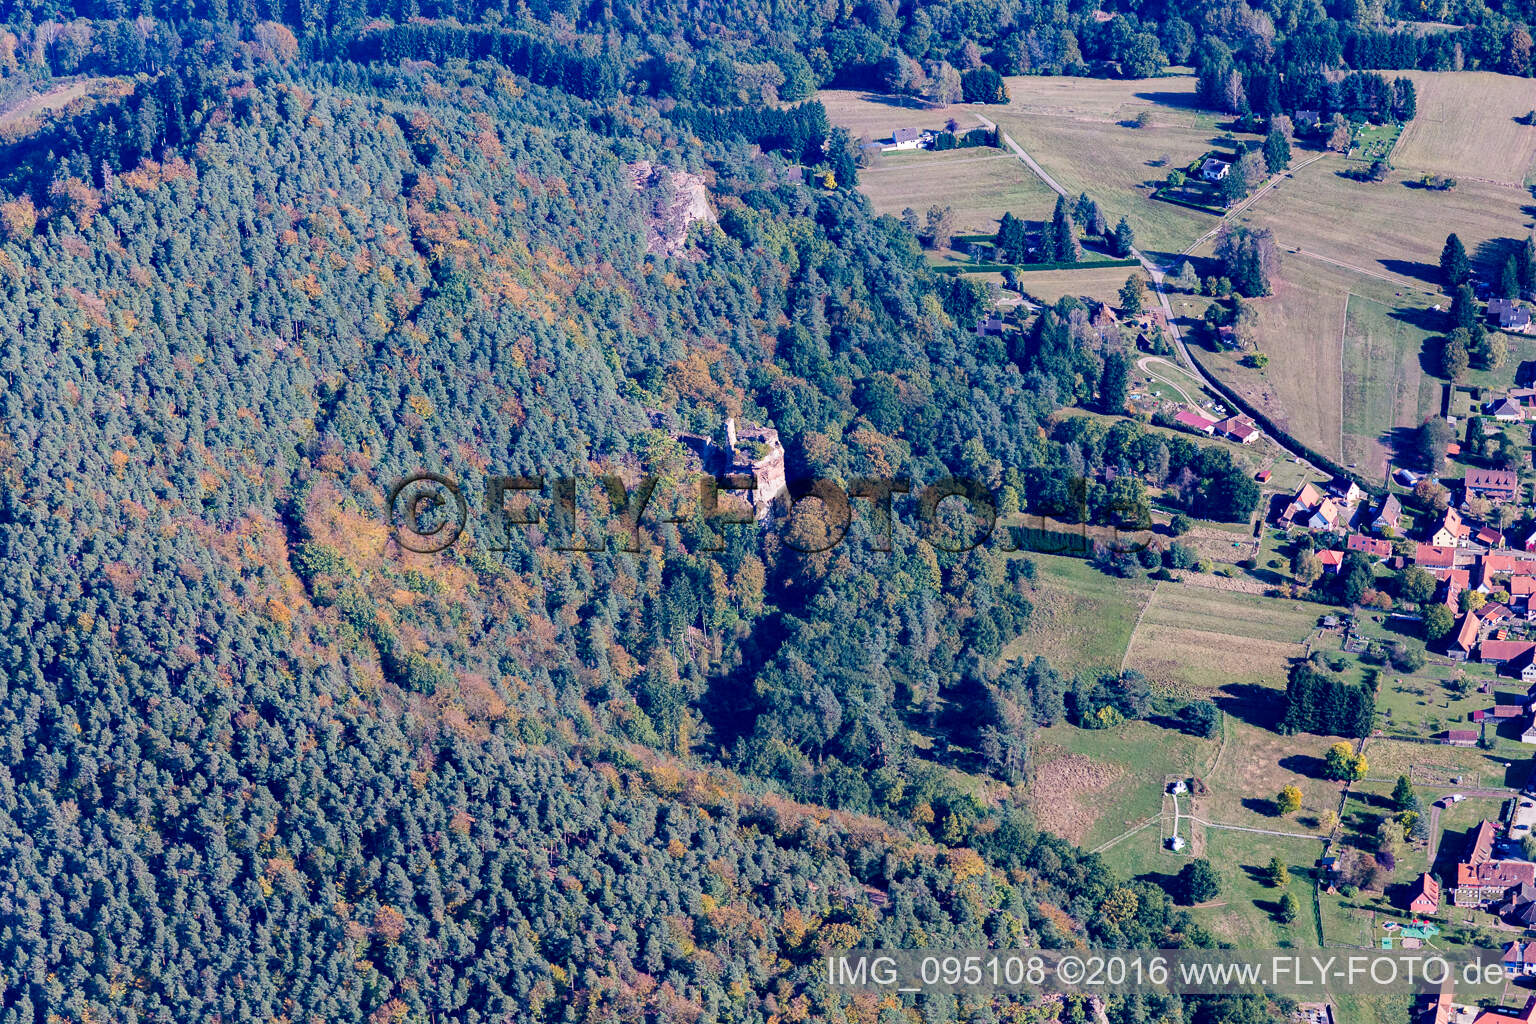 Vue aérienne de Château Petit Arnsberg à Obersteinbach dans le département Bas Rhin, France